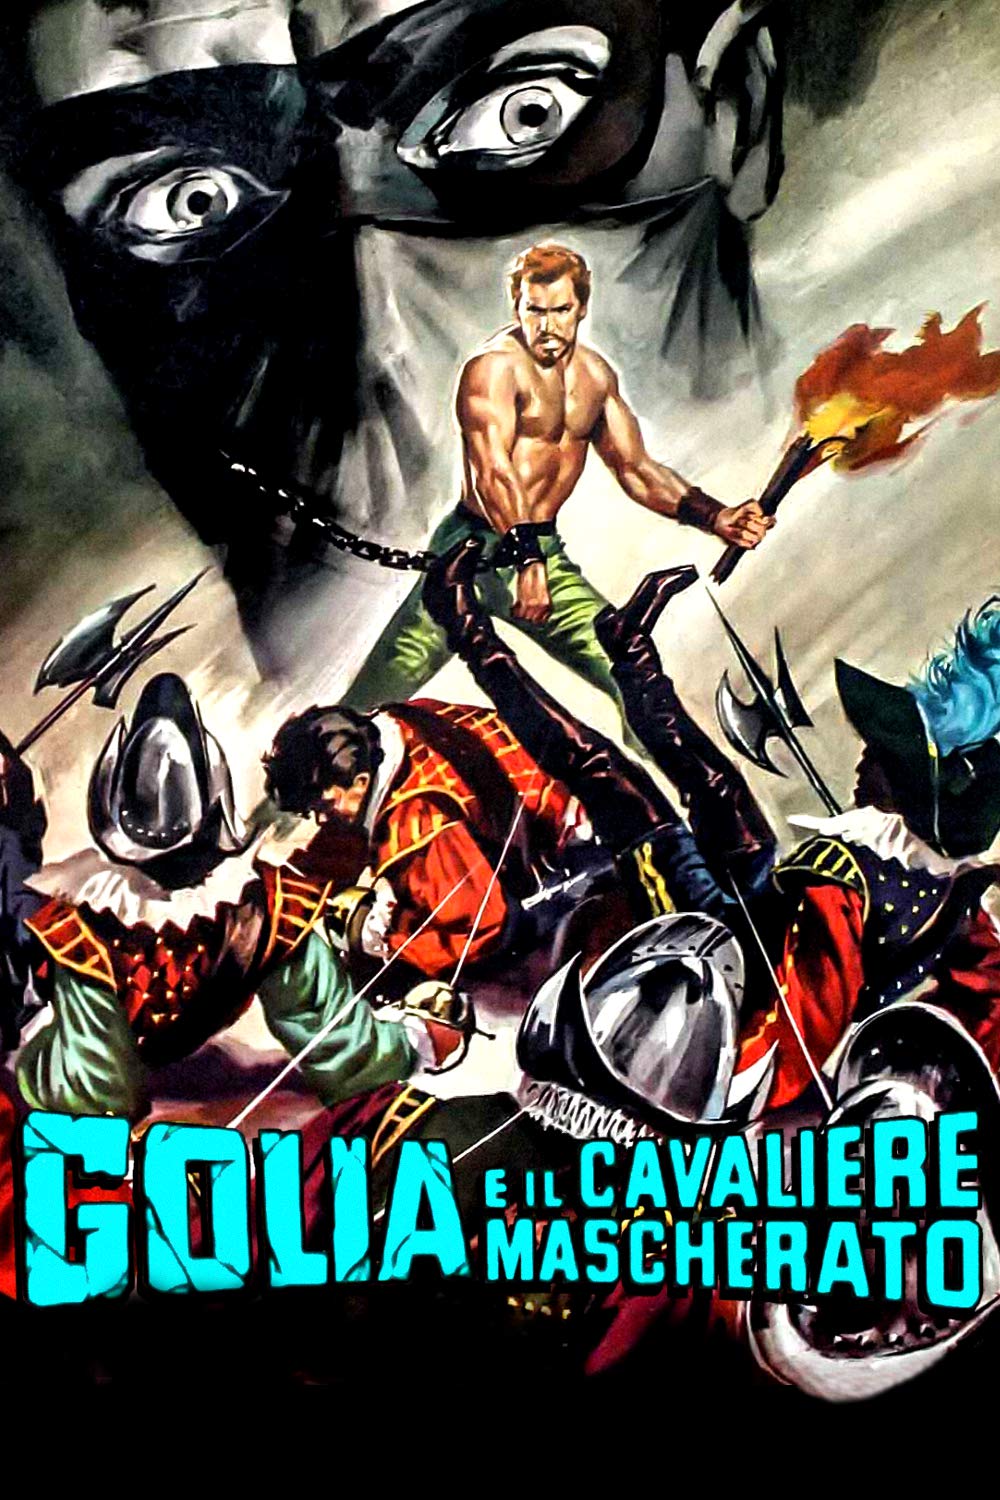 Golia e il cavaliere mascherato [HD] (1963)